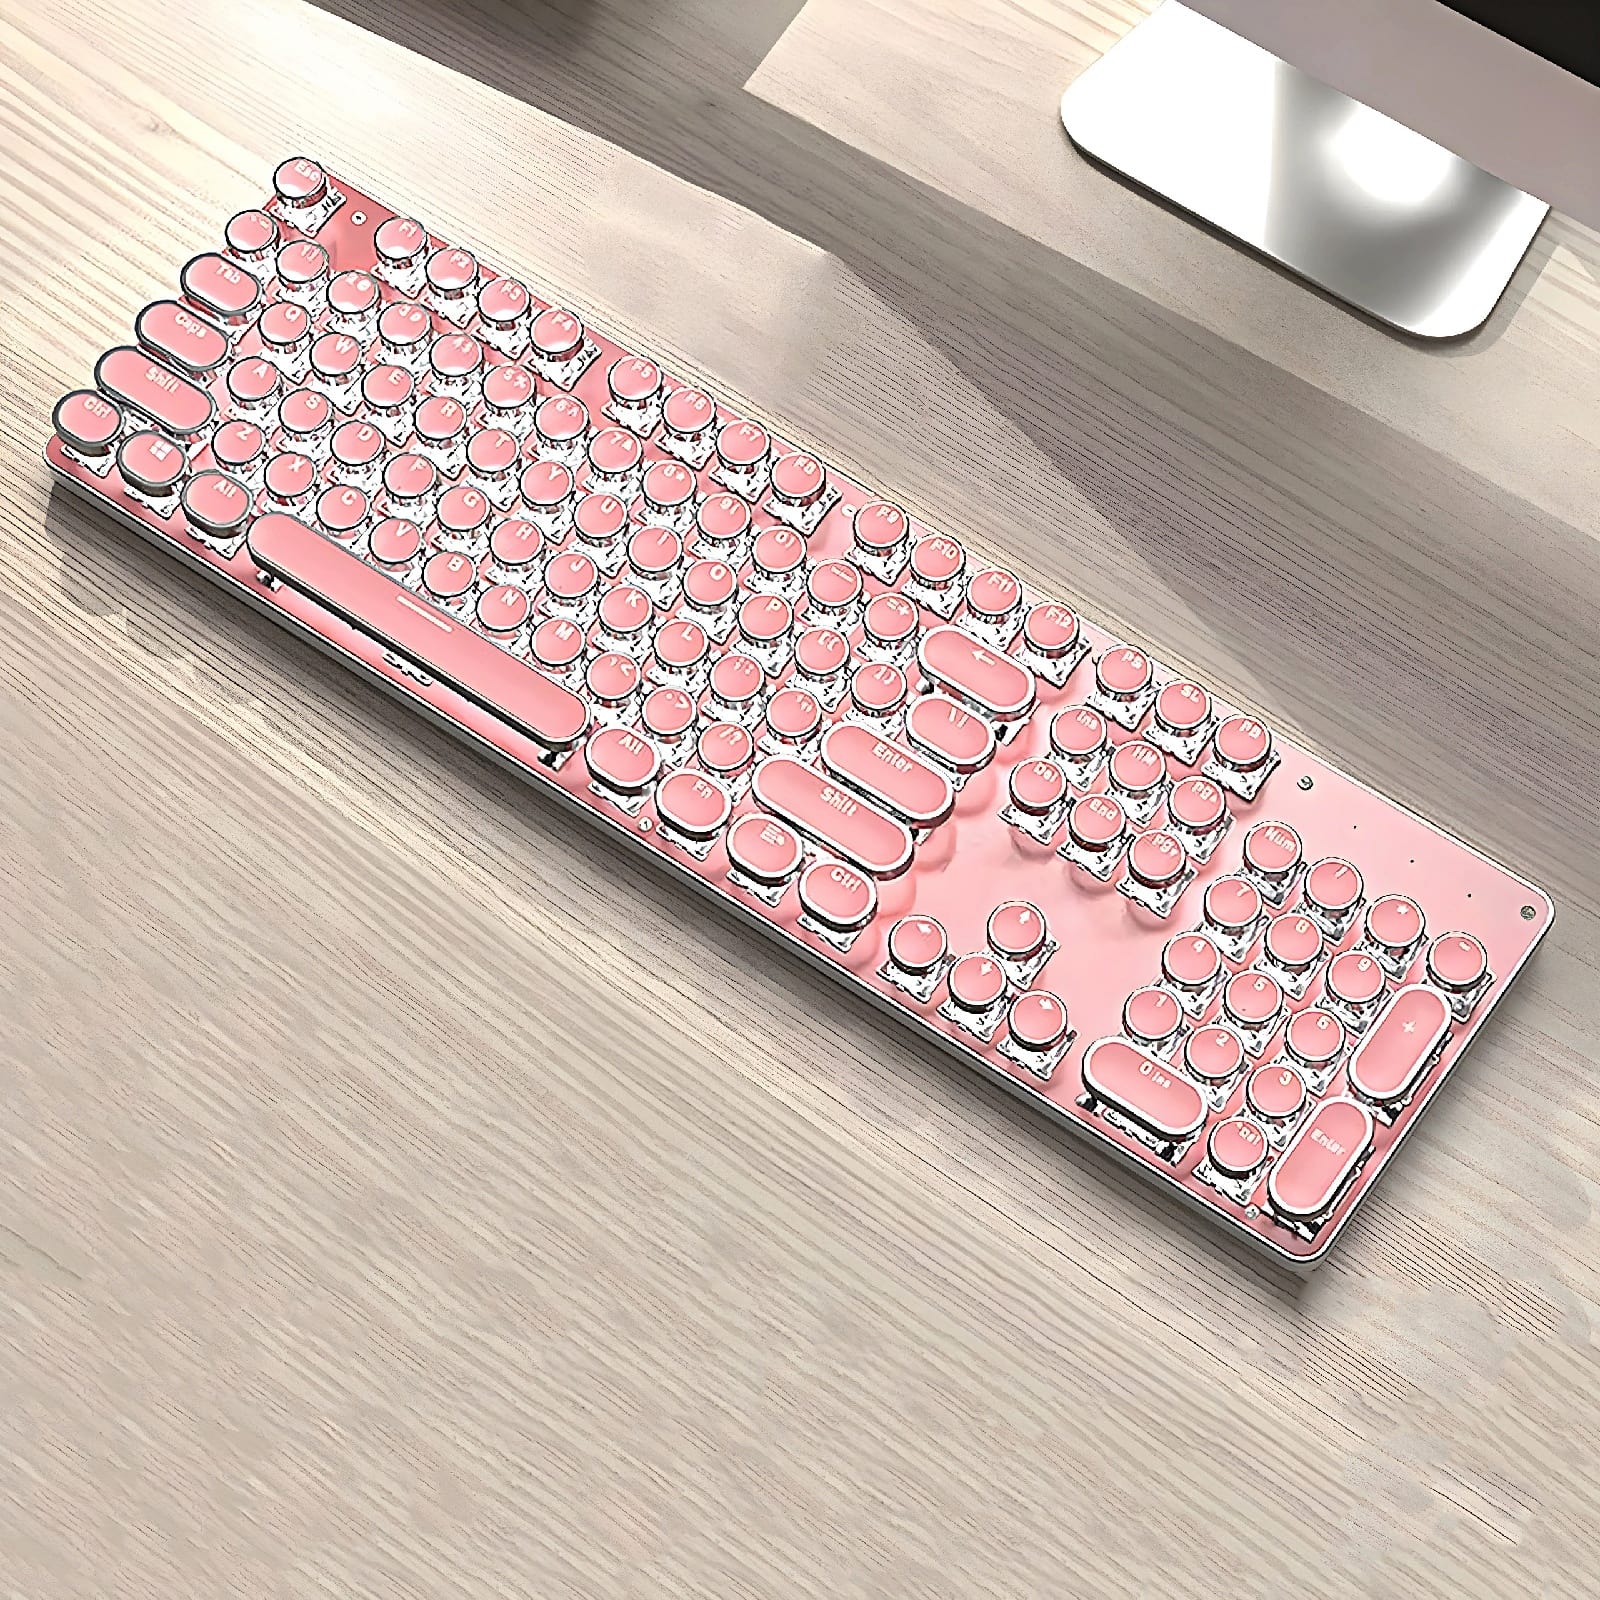 Retro Typewriter Bluetooth Keyboard 2 - Pink | The PNK Stuff